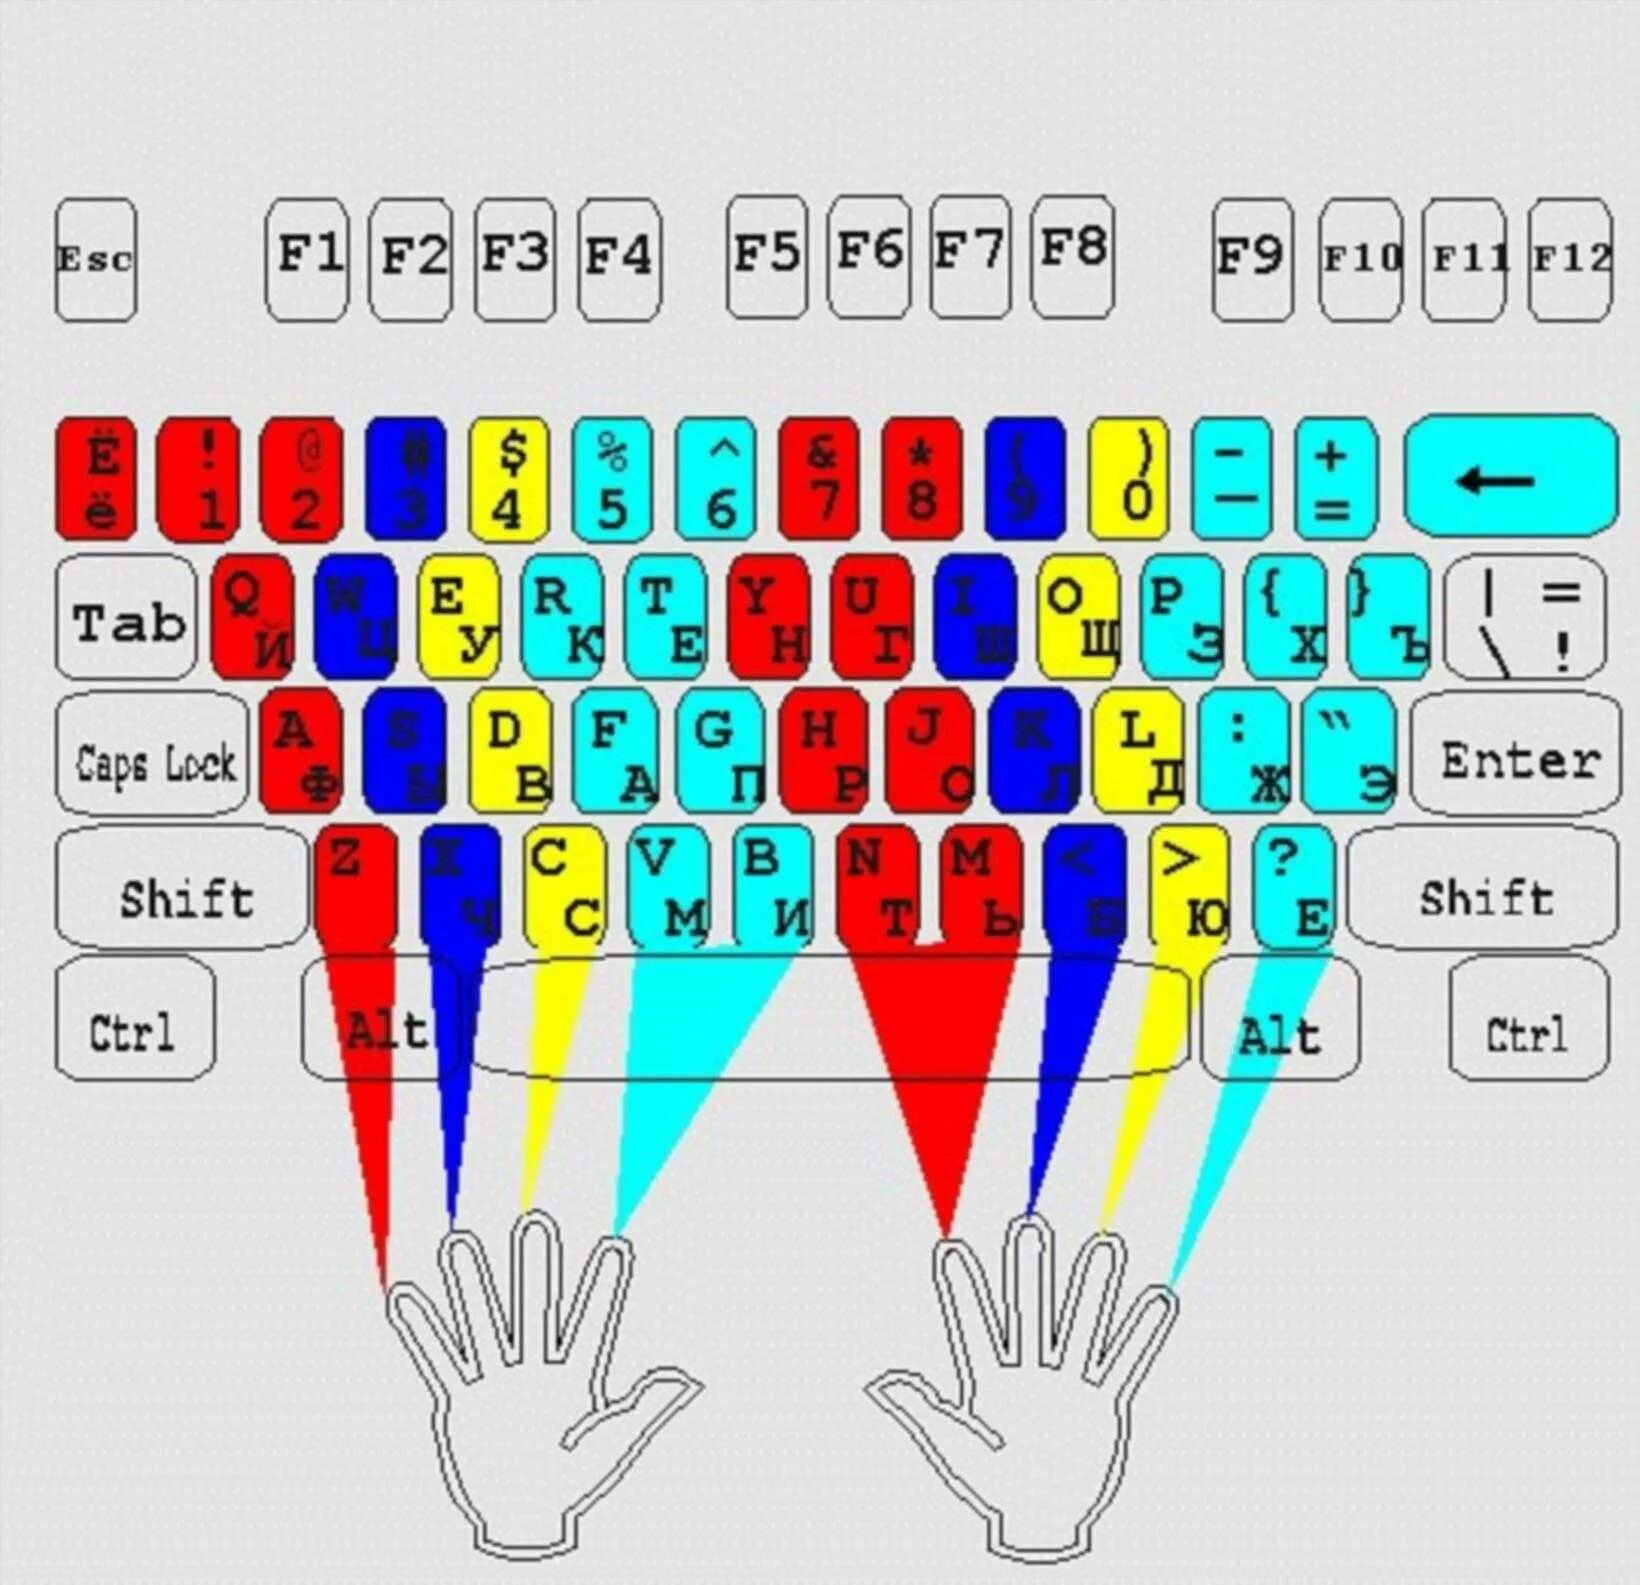 Слепой десятипальцевый метод печати. Слепой 10 пальцевый метод печати вся клавиатура. Раскладка клавиатуры десятипальцевый метод. Десятипальцевый метод печати схема.